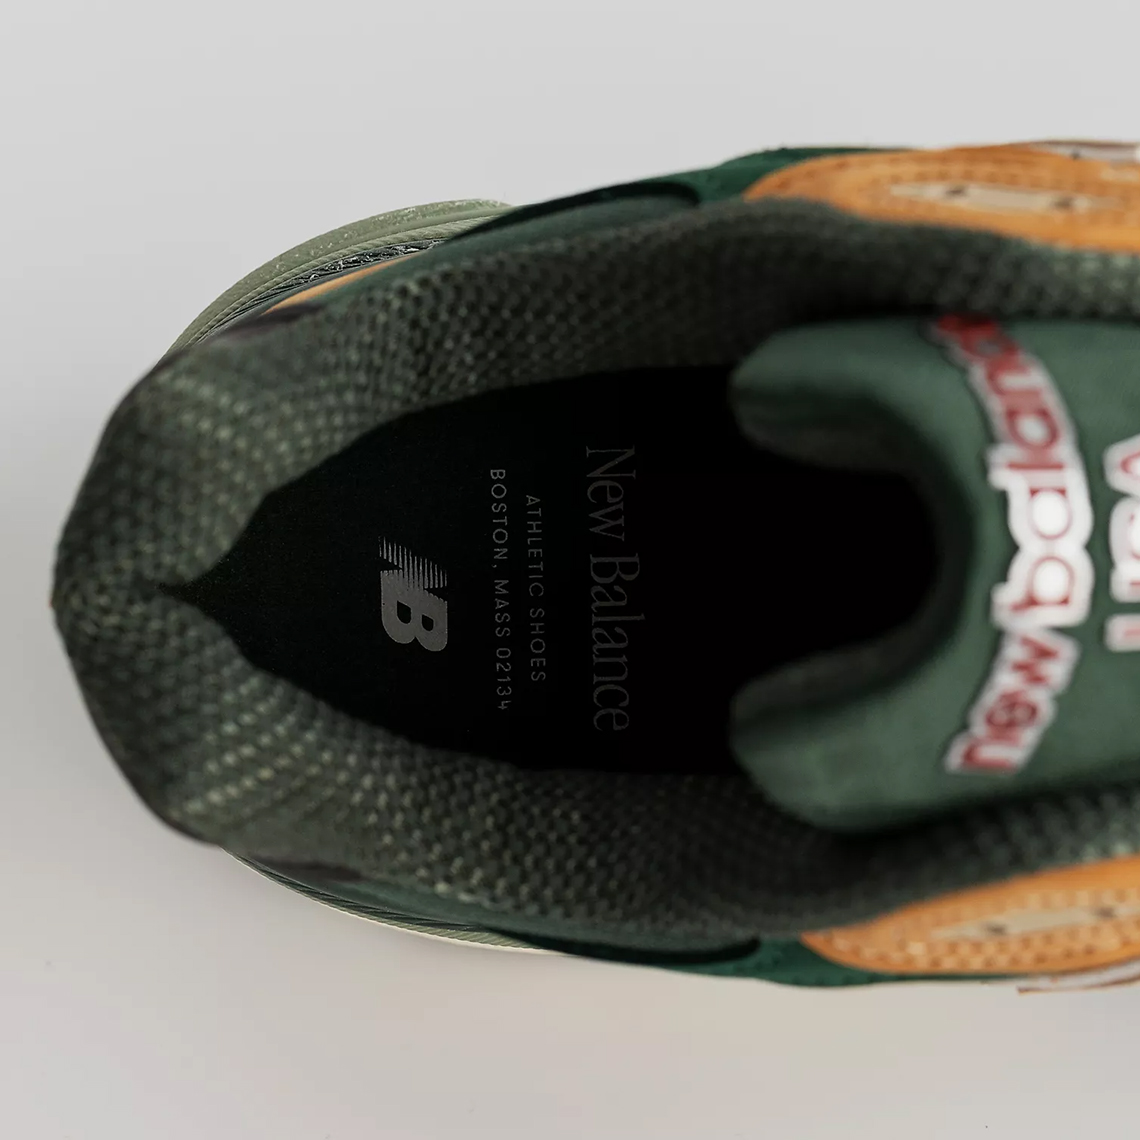 Ja Morant Shoes Tan Green M990tg3 6